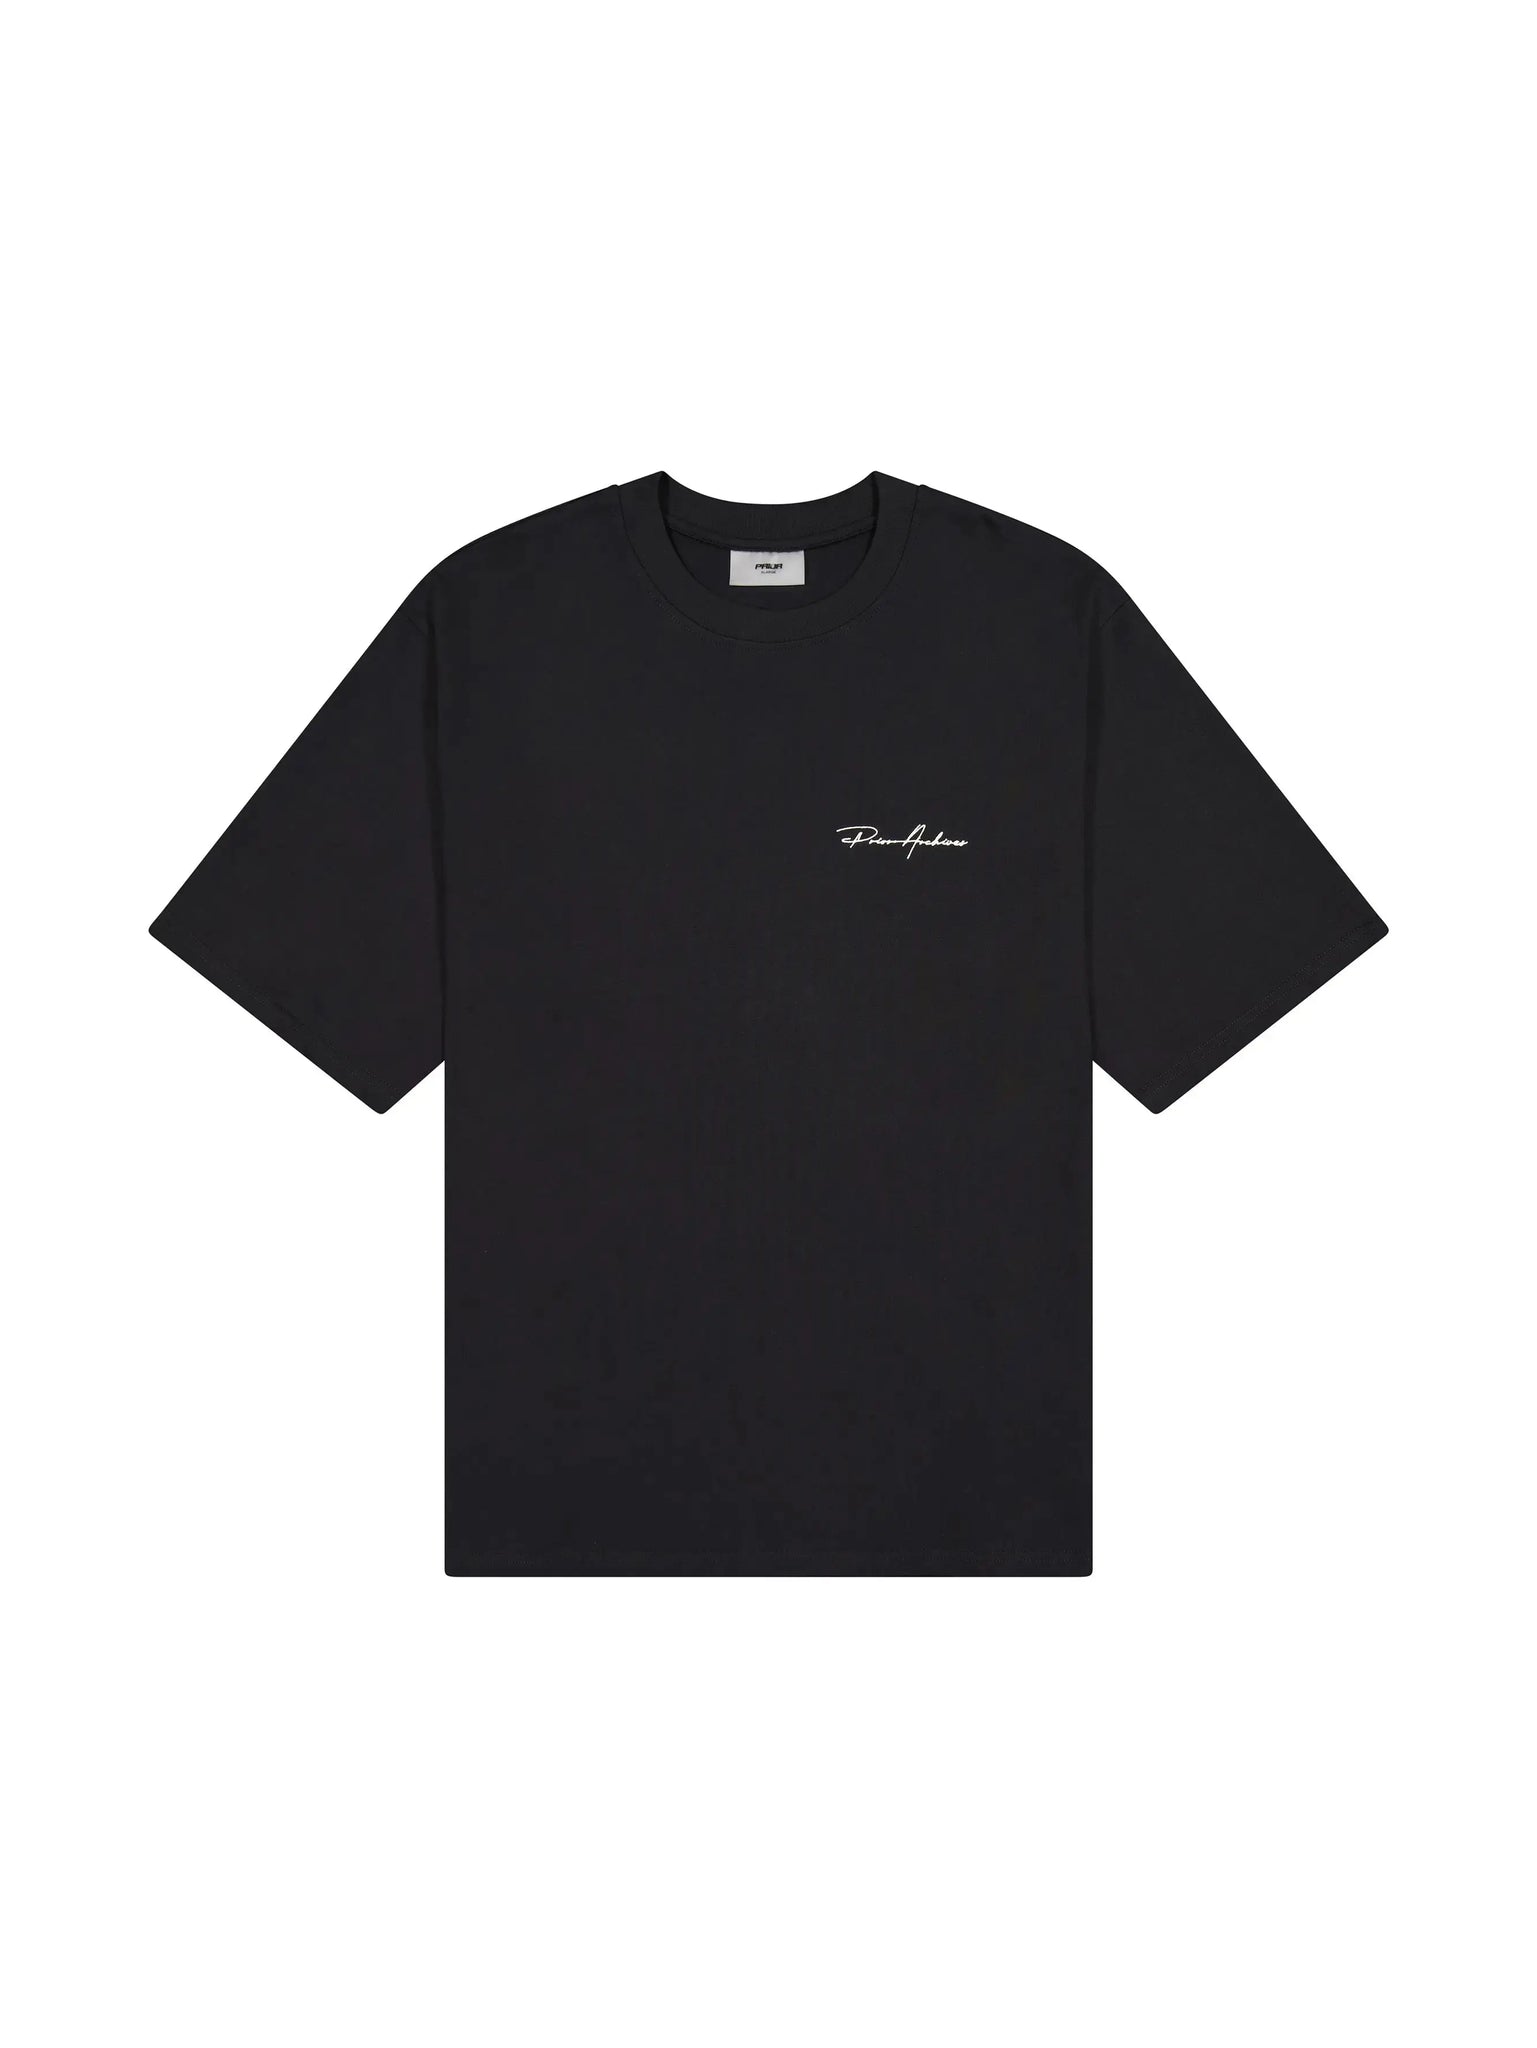 Prior Embroidery Logo Oversized T-shirt Onyx 2.0 (New Sizing)